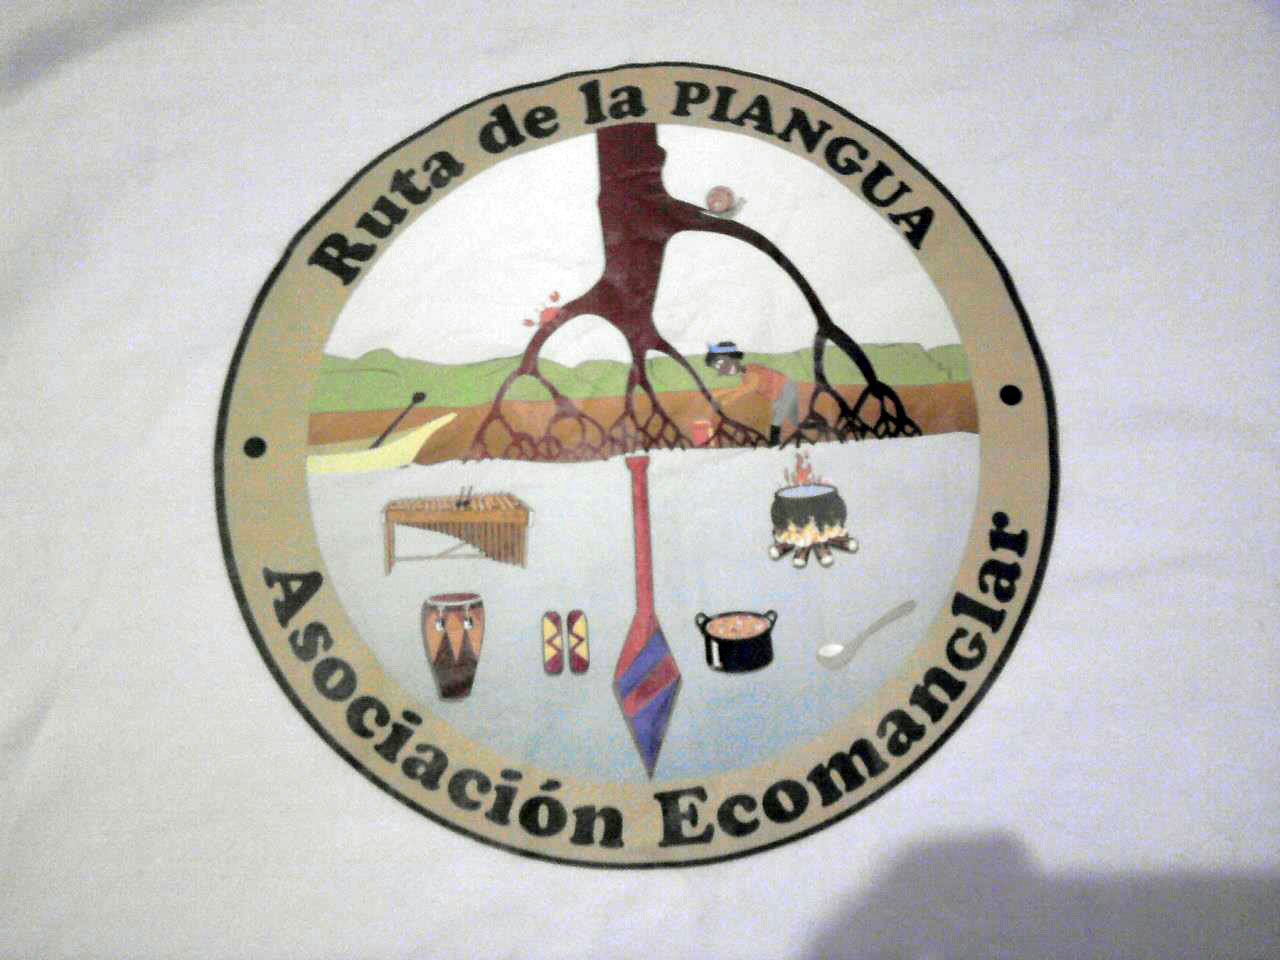 Fotografía del logo de la Ruta de la Piangua